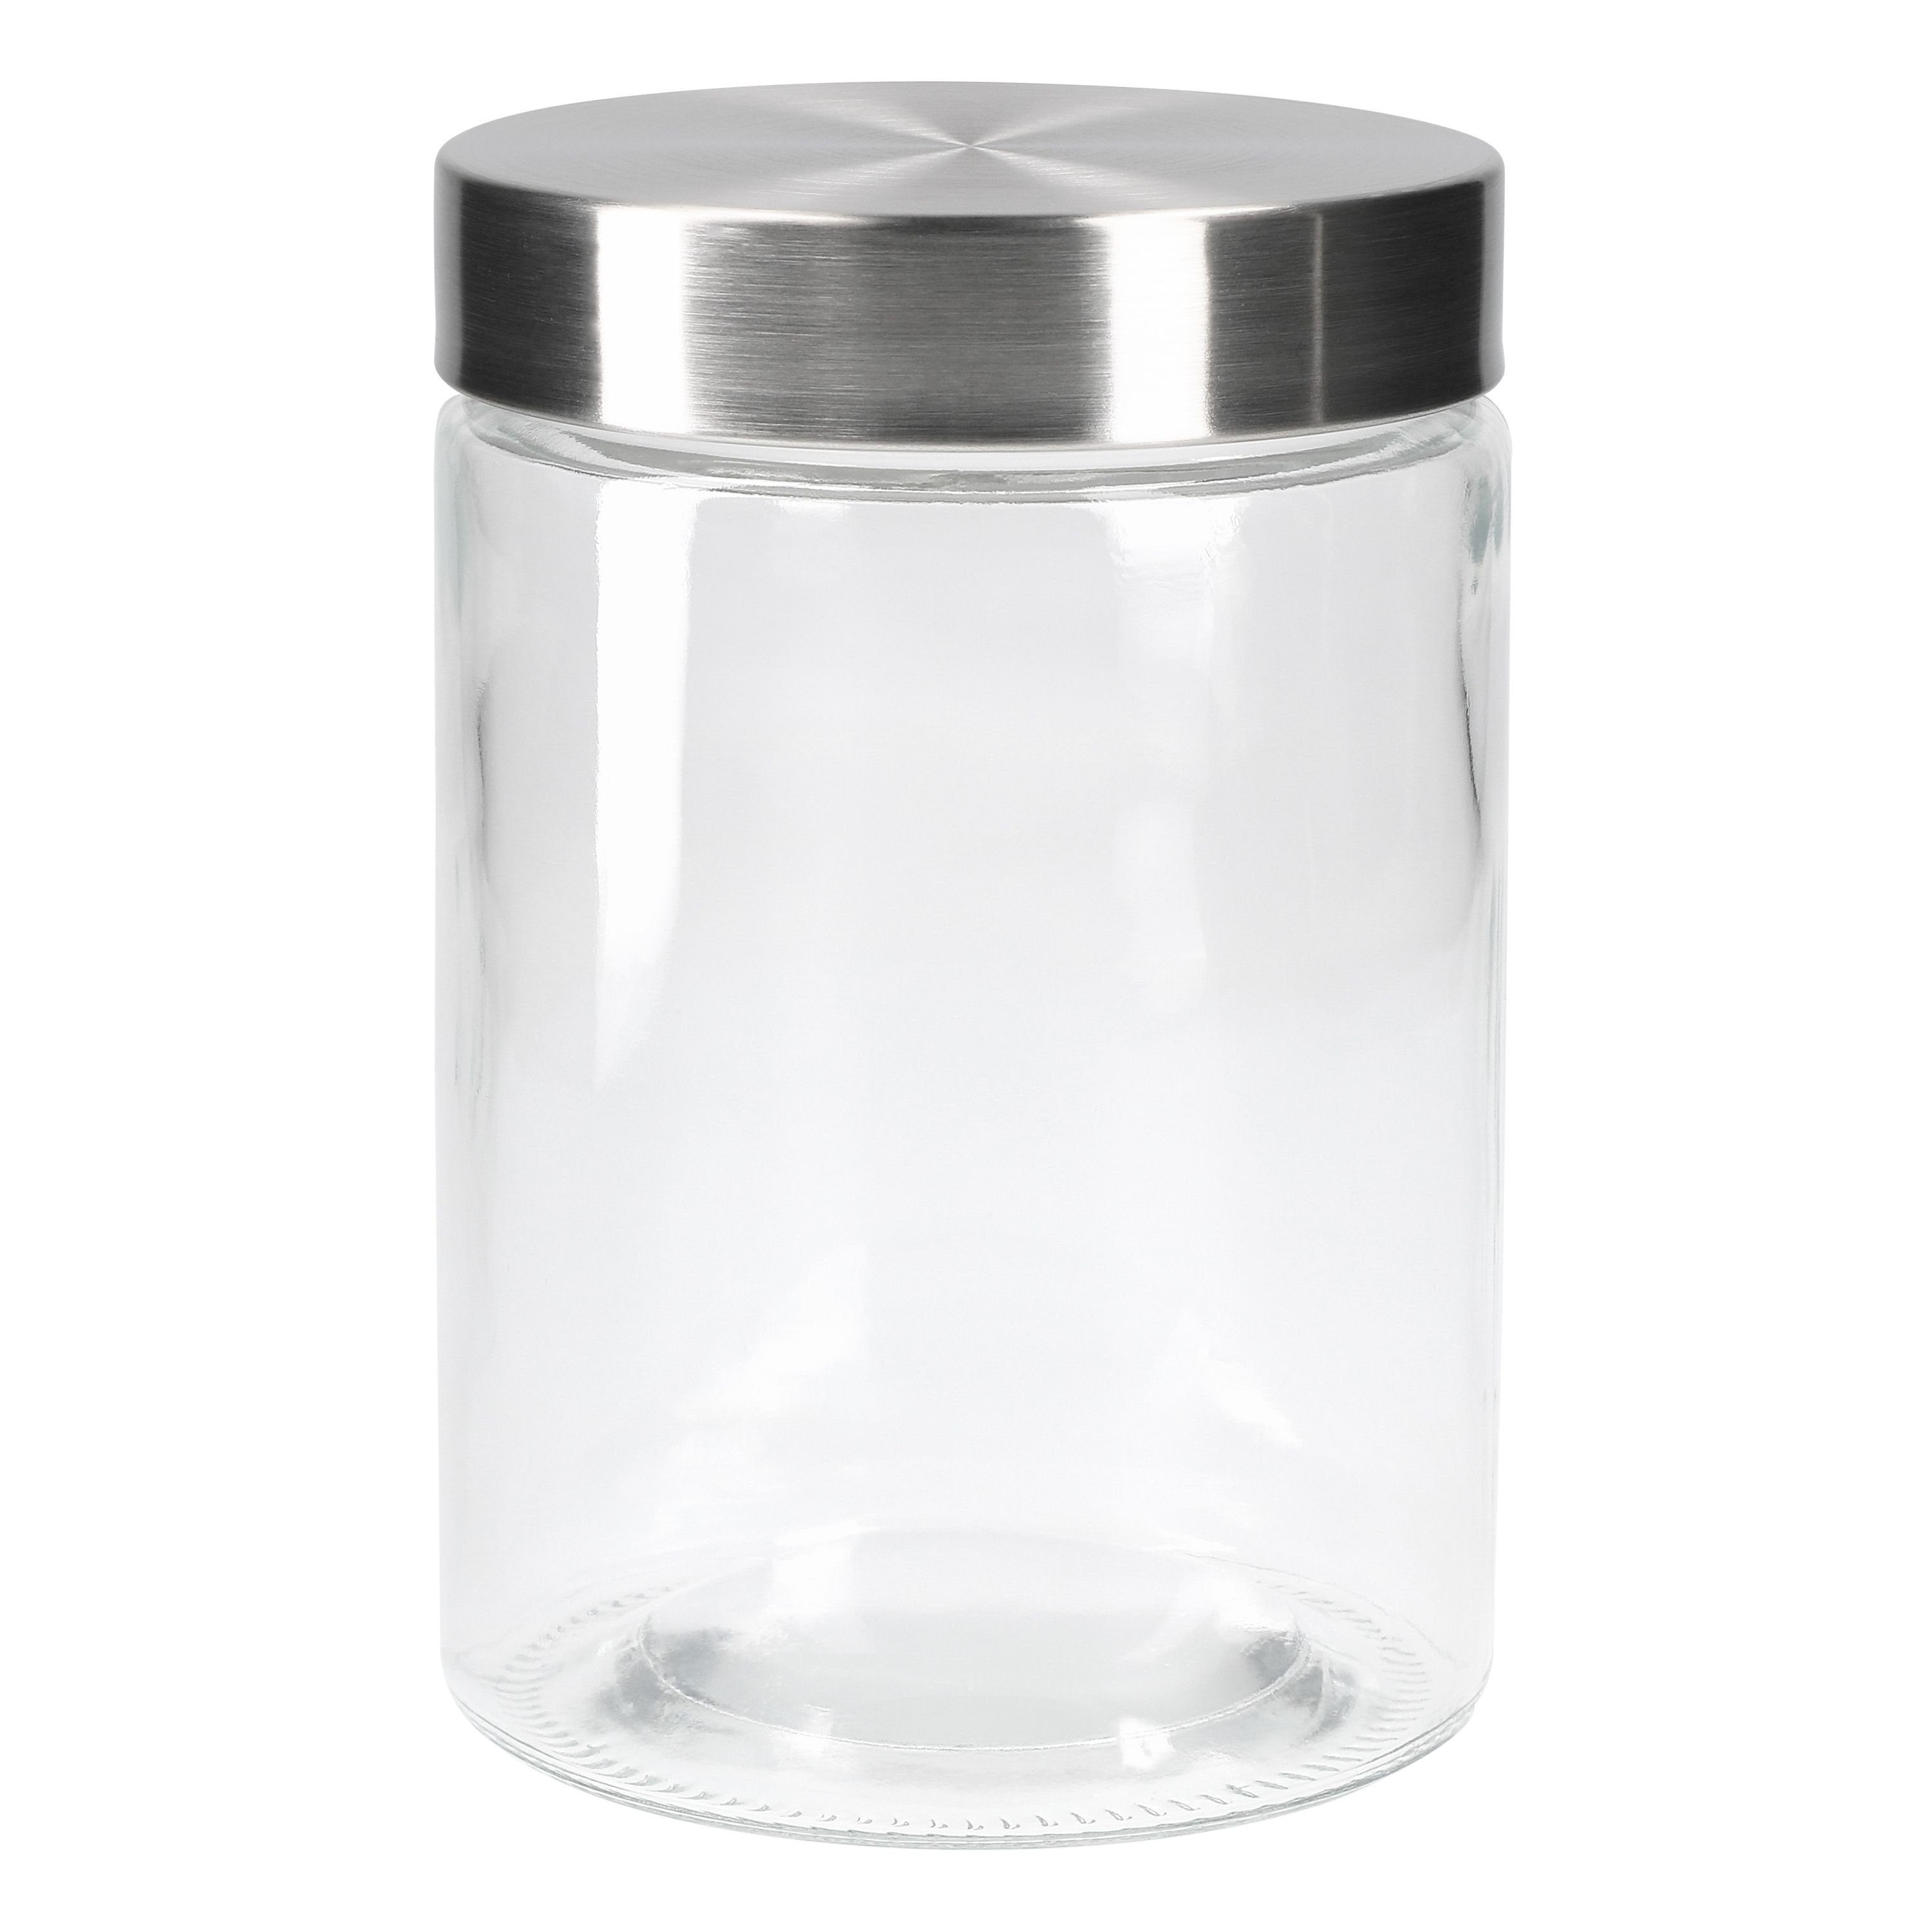 MamboCat Vorratsglas 1.2L, Glas Set Vorratsglas Bera 6er